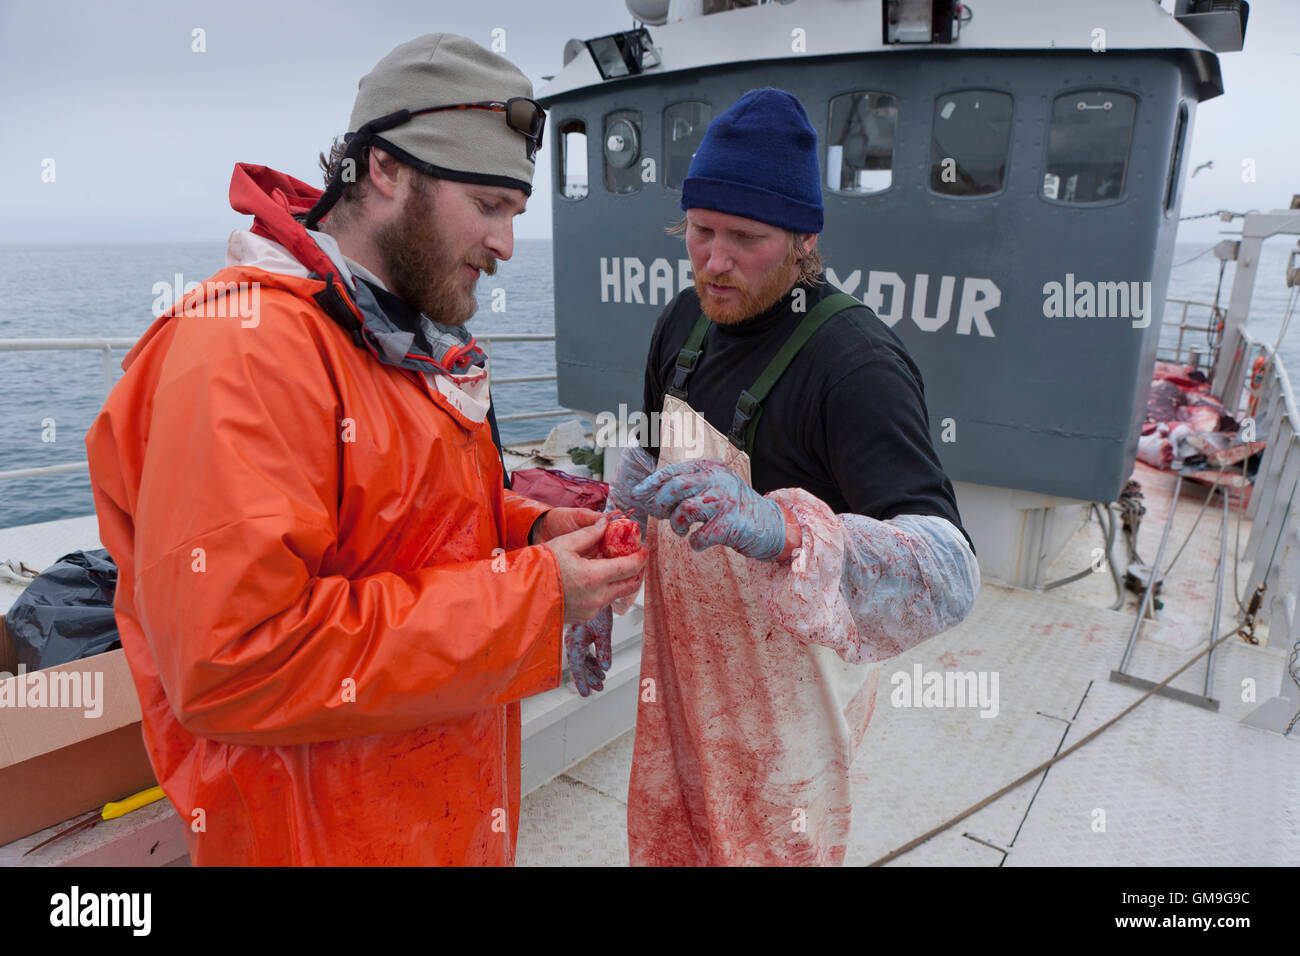 Wissenschaftler und Fischer, Minke Whale Hunt, Hrafnreydur KO-100, Walfangschiff, Island Stockfoto